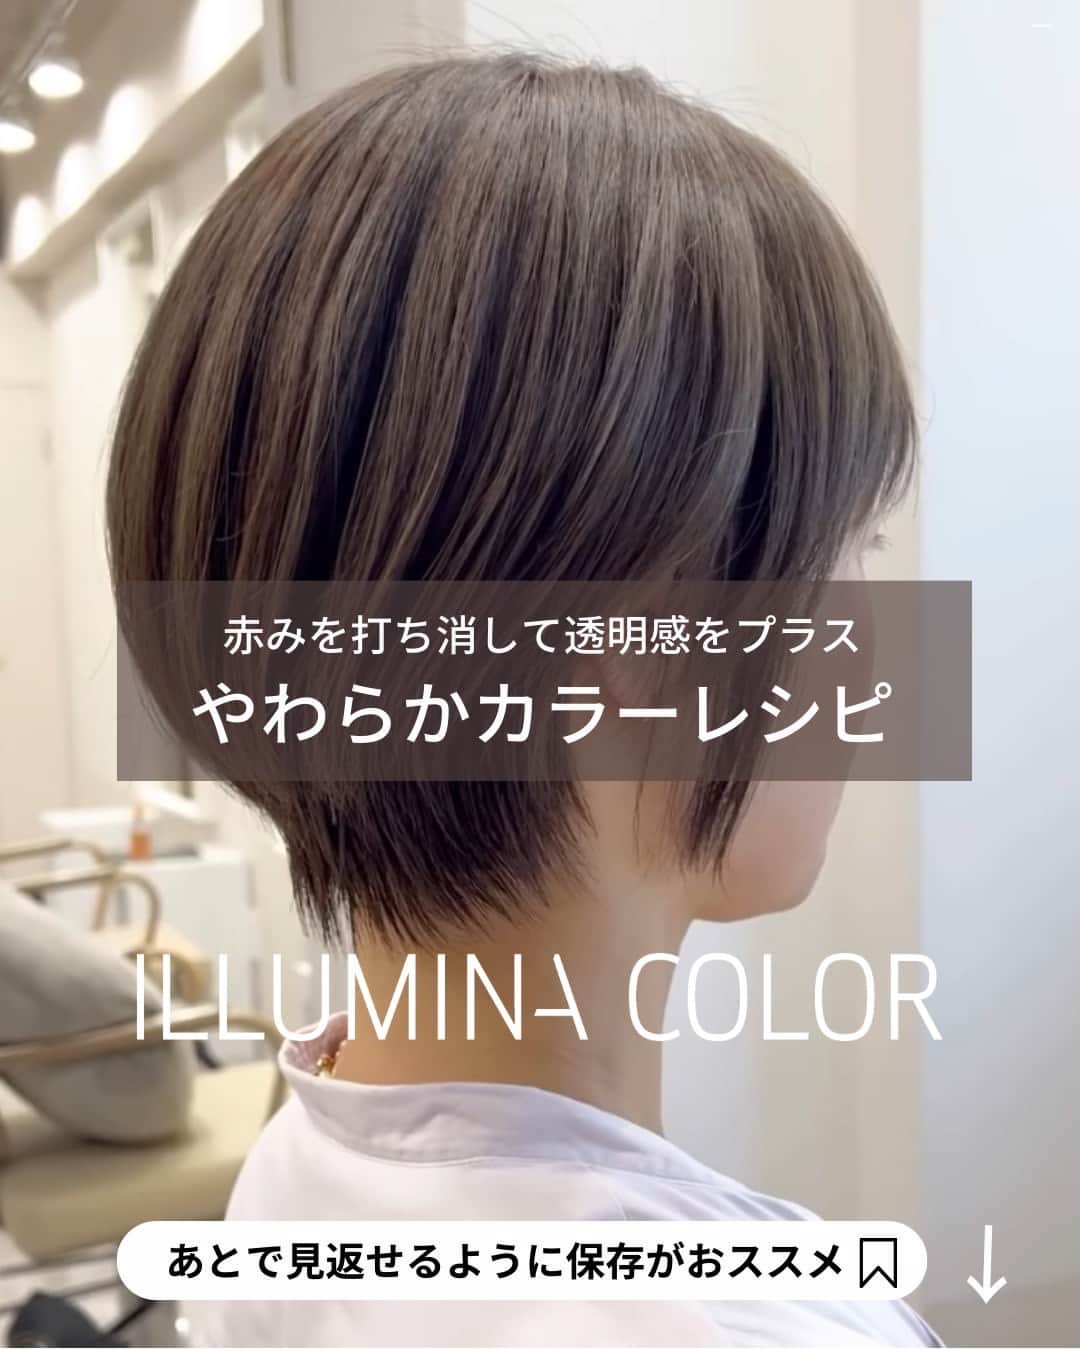 Wella Professionals Japanのインスタグラム：「秋も深まってきましたね🍂 明るい髪色からトーンダウンをご希望されるお客さまも多いのでは？  日本人に多い『赤み』をうまく打ち消してやわらかさのあるカラーをご提案しませんか？  WELLA Passionsitas  ULUA吉祥寺の神保 貴文さん（@ulua.taka)がイルミナカラーのアレンジで見事に赤みを打ち消して、やわらかで透明感を感じるカラーデザインをポストしてくださいましたのでご紹介します 🙌  ぜひ参考にしてください😘   ★☆★☆★☆★☆★☆★☆★☆★☆★☆★☆★☆  【recipe】 Ocean 8 ＋ Forest 8 ＋ Orchid 8 = 3 : 1 : 1（2剤：6%）  【カラーのこだわり☀️】 ハイライトなどを駆使して透明感を出す🌟 絶対に頭皮が痛くないヘアカラー🌟 暗めでも透明感がある🌟 赤味を消すカラー💚 髪のダメージを最小限に抑える🌟 白髪をぼかせる🌟 世界に一つあなたの為にブレンド🎨  ★☆★☆★☆★☆★☆★☆★☆★☆★☆★☆★☆  【投稿大募集中】 WELLAの薬剤を使用して作った投稿をお待ちしています。 投稿内に@wellapro_japanのメンションと使用された薬剤とレシピをご記入ください。 素敵な投稿をしていただいた方にはこちらからご連絡をさせていただき、公式アカウントにてご紹介させていただきます 🙌 たくさんの投稿お待ちしています。 （薬剤をアレンジされる場合は同一ブランドのみでお願いいたします）  #ウエラ #イルミナカラー #イルミナカラーオーシャン #イルミナカラーフォレスト #イルミナカラーオーキッド #ヘアカラー #ヘアスタイル #カラー #ハイトーンカラー #サロンカラー #デザインカラー #美容師 #美容室 #美容院 #ヘアサロン　 #髪色変えたい #ヘアカラー好きとつながりたい #イメージチェンジ #イメチェン #hair #haircolor #hairstyle」